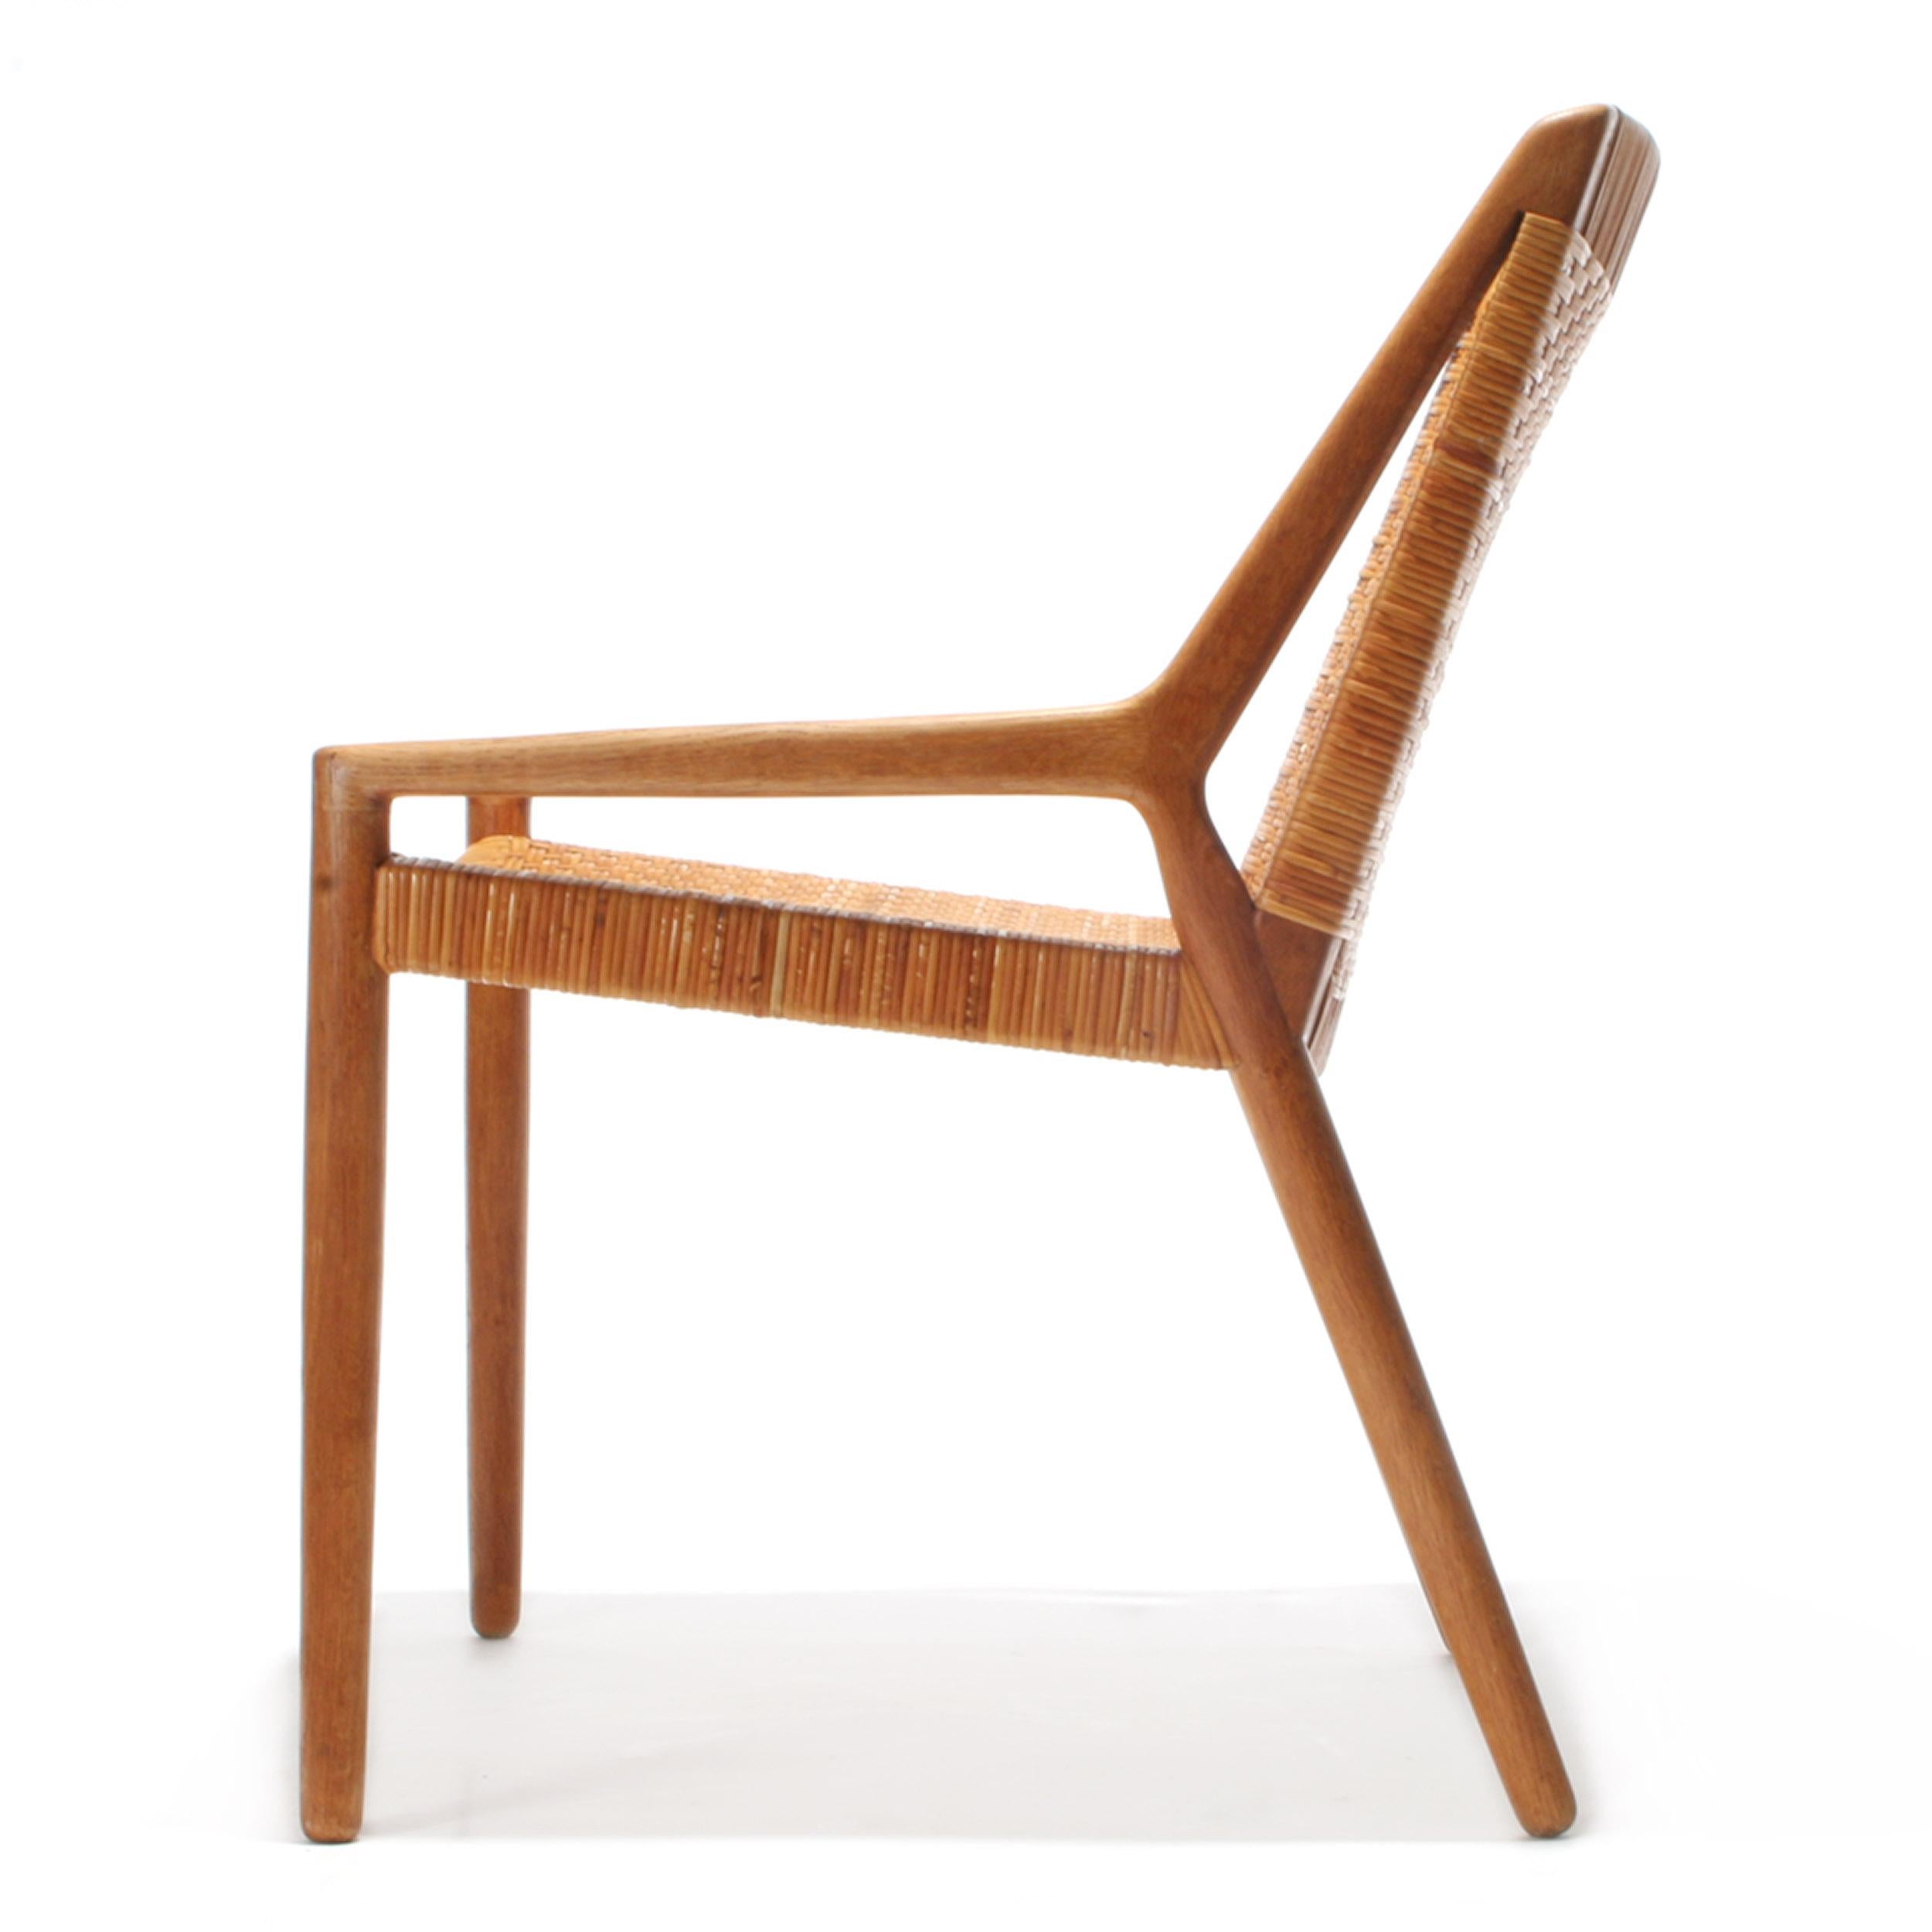 Un rare fauteuil moderne scandinave conçu par Ejner Larsen & Aksel Bender Madsen. Le design présente du chêne et du cannage dans une forme linéaire moderne. Produit par Willy Beck au Danemark, vers les années 1950.